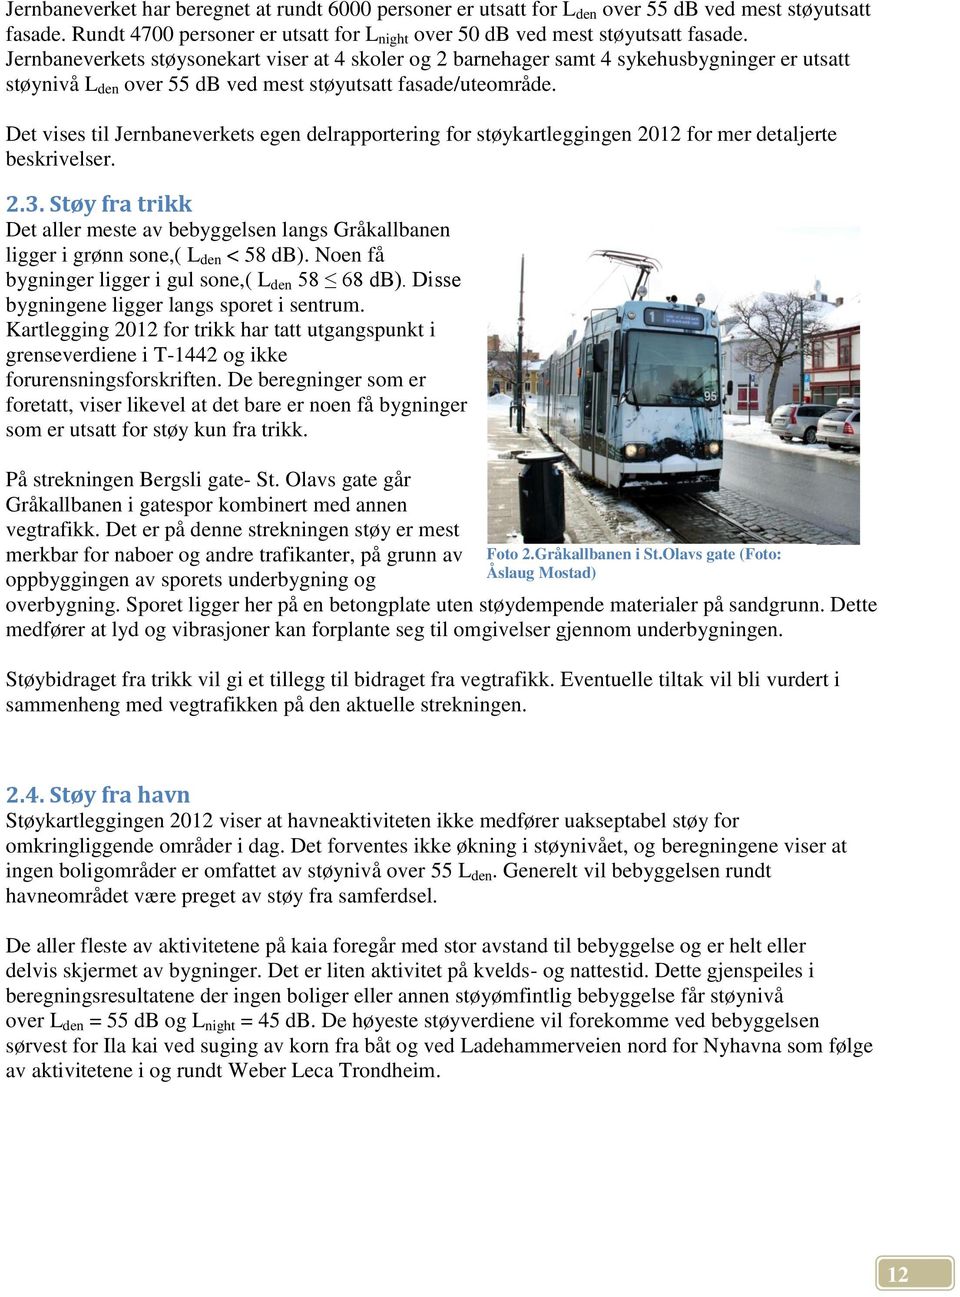 Det vises til Jernbaneverkets egen delrapportering for støykartleggingen 2012 for mer detaljerte beskrivelser. 2.3.